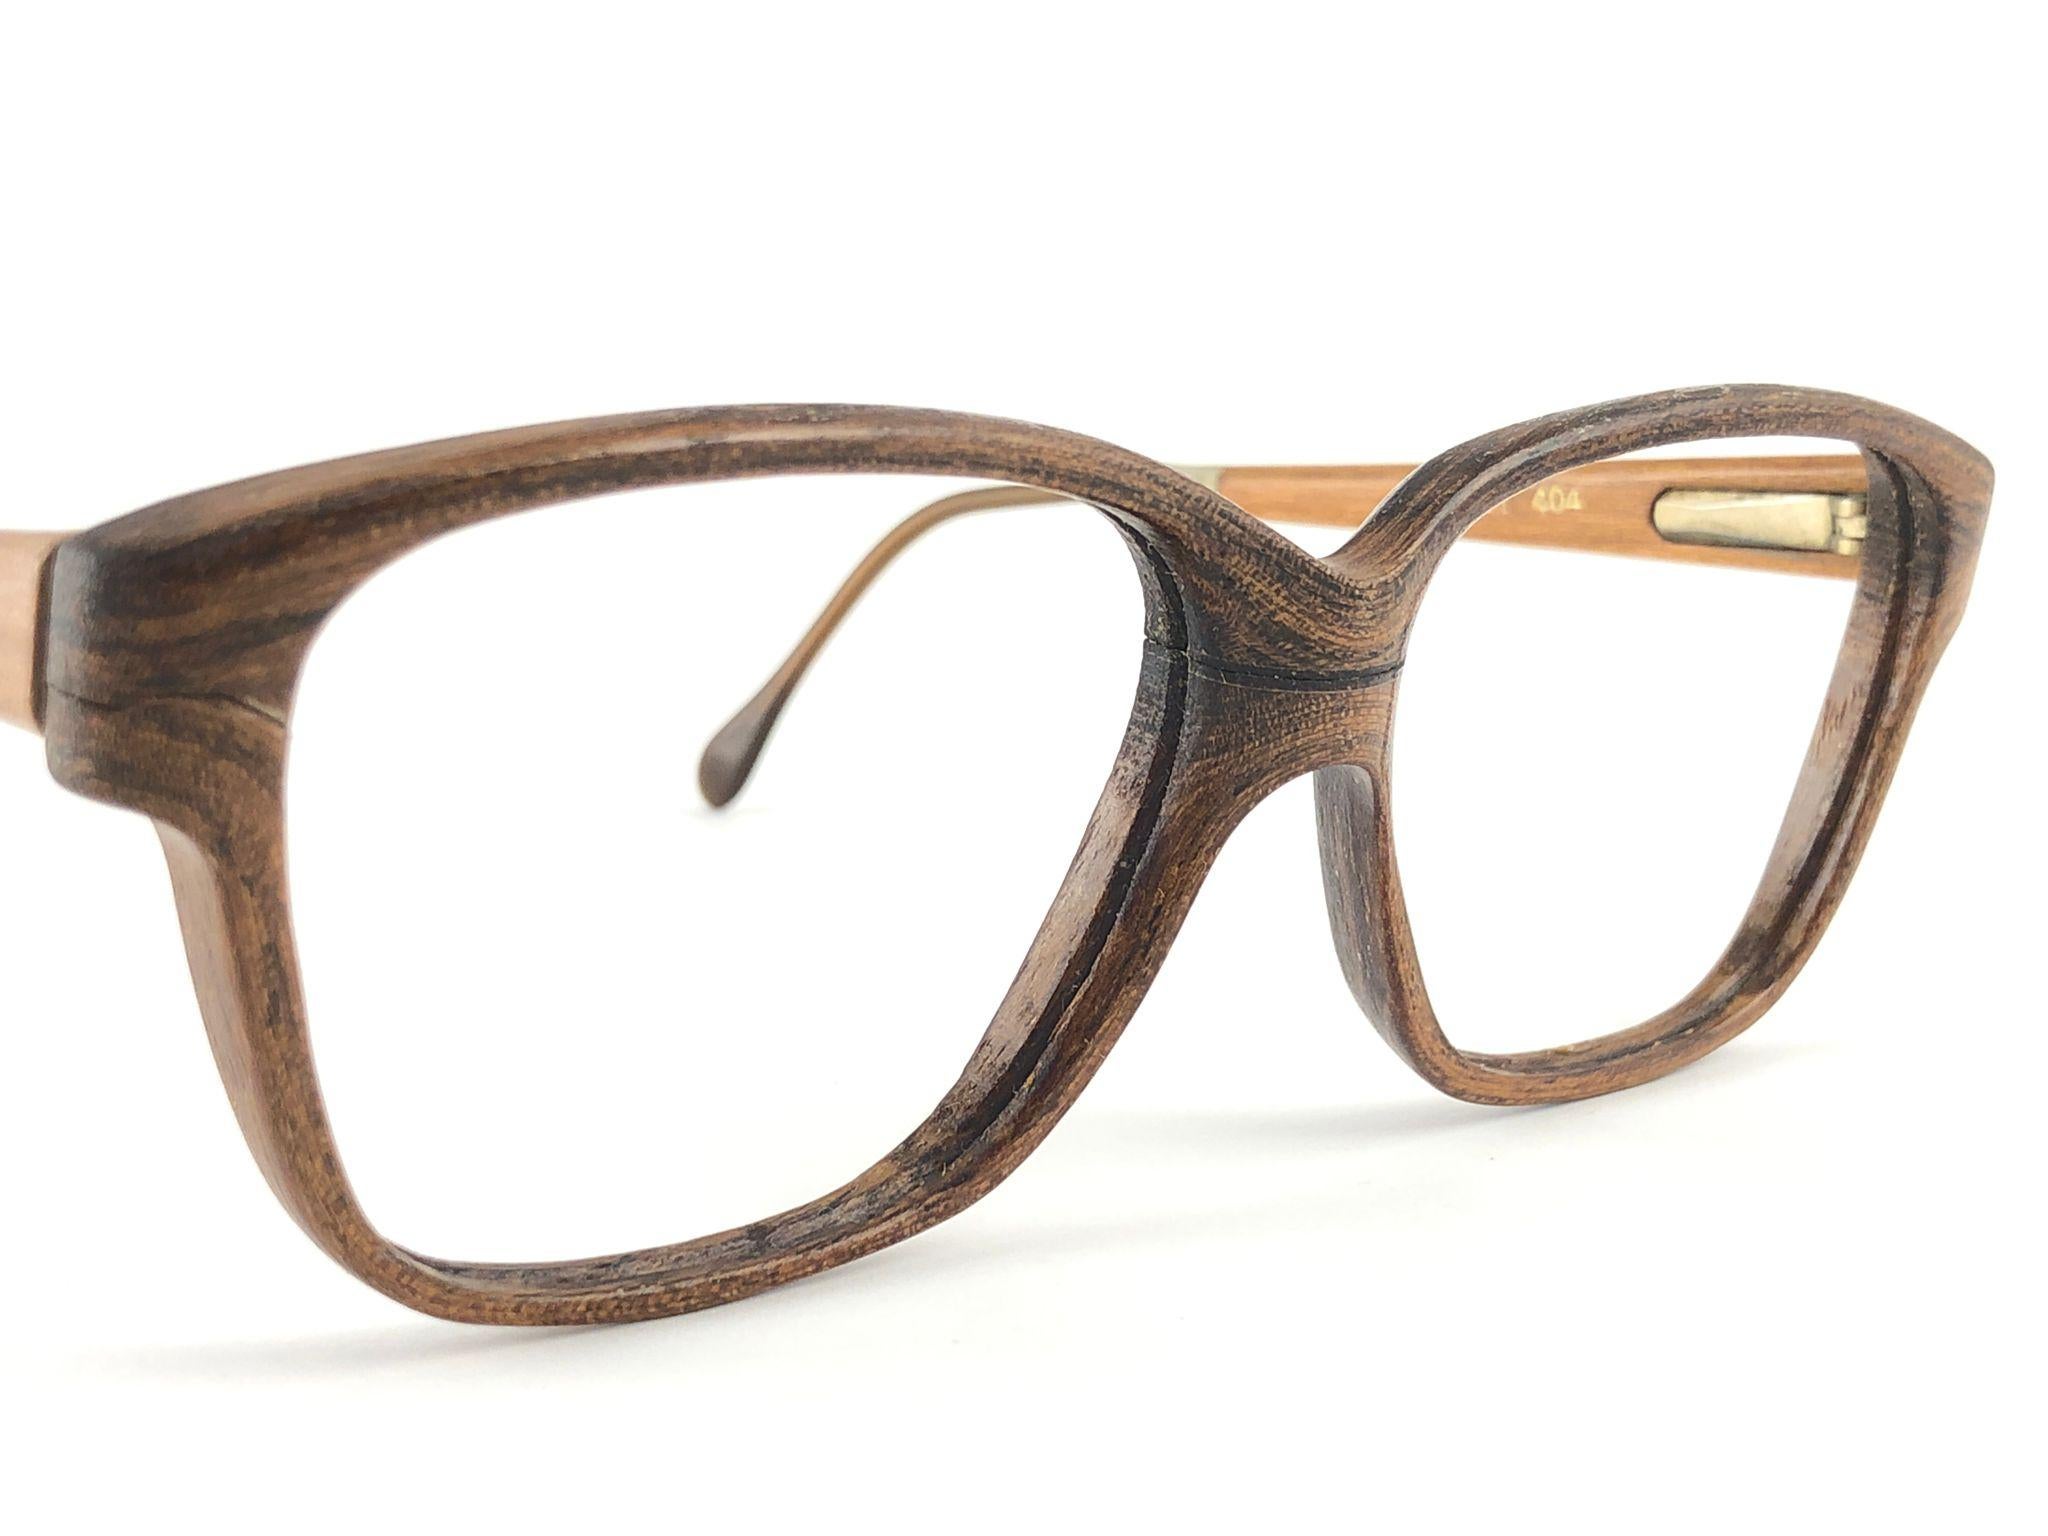 Nouveau Vintage Wood Look Paris monture en bois véritable parfait pour toutes les lentilles de prescription, également idéal pour porter comme une paire de lunettes de soleil. 
La charnière à ressort les rend très confortables à porter.

Neuf,